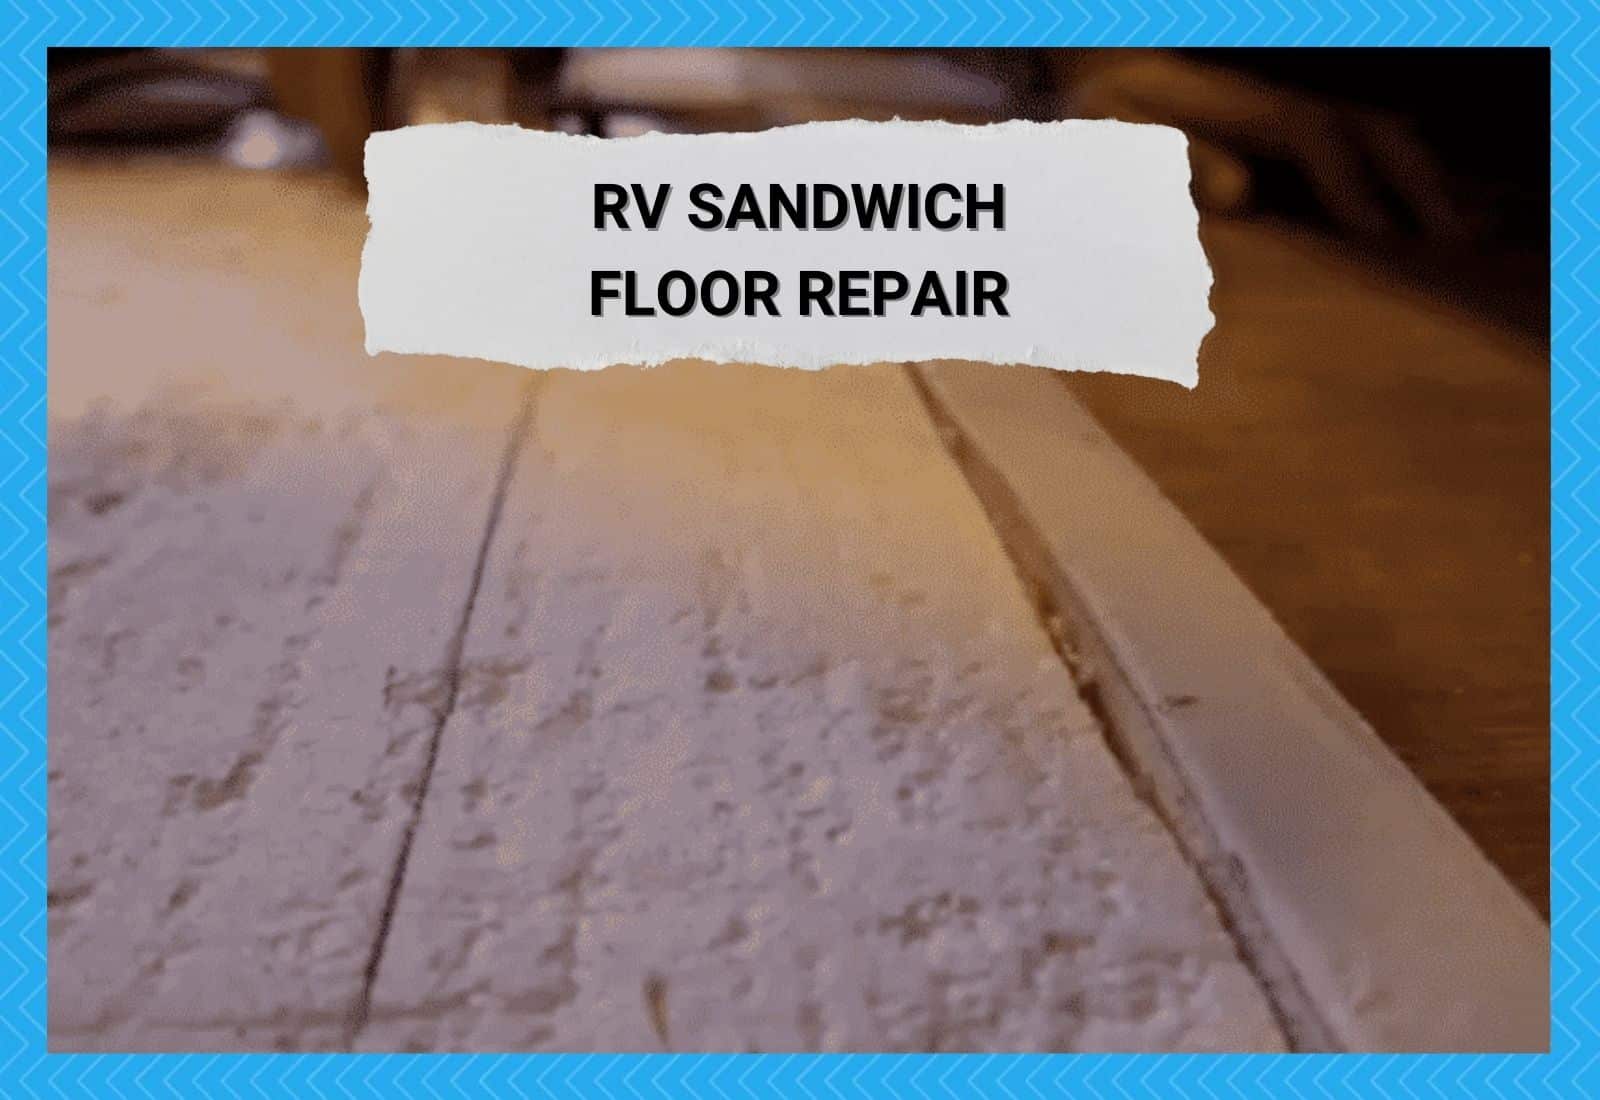 RV Sandwich Floor Repair